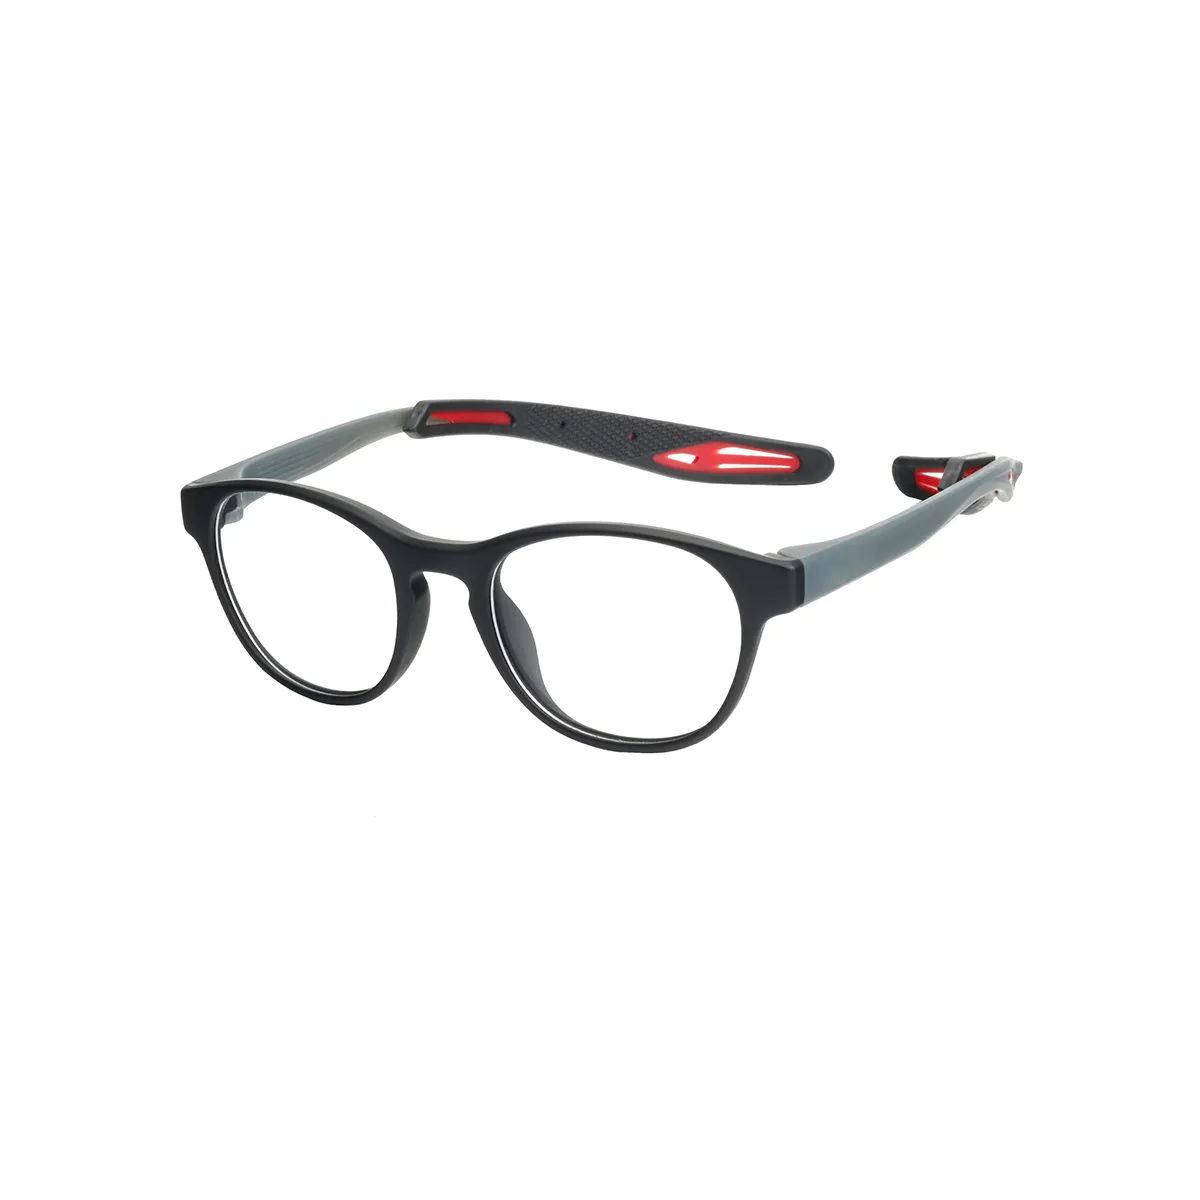 Karen - Oval Black-Red Glasses for Men